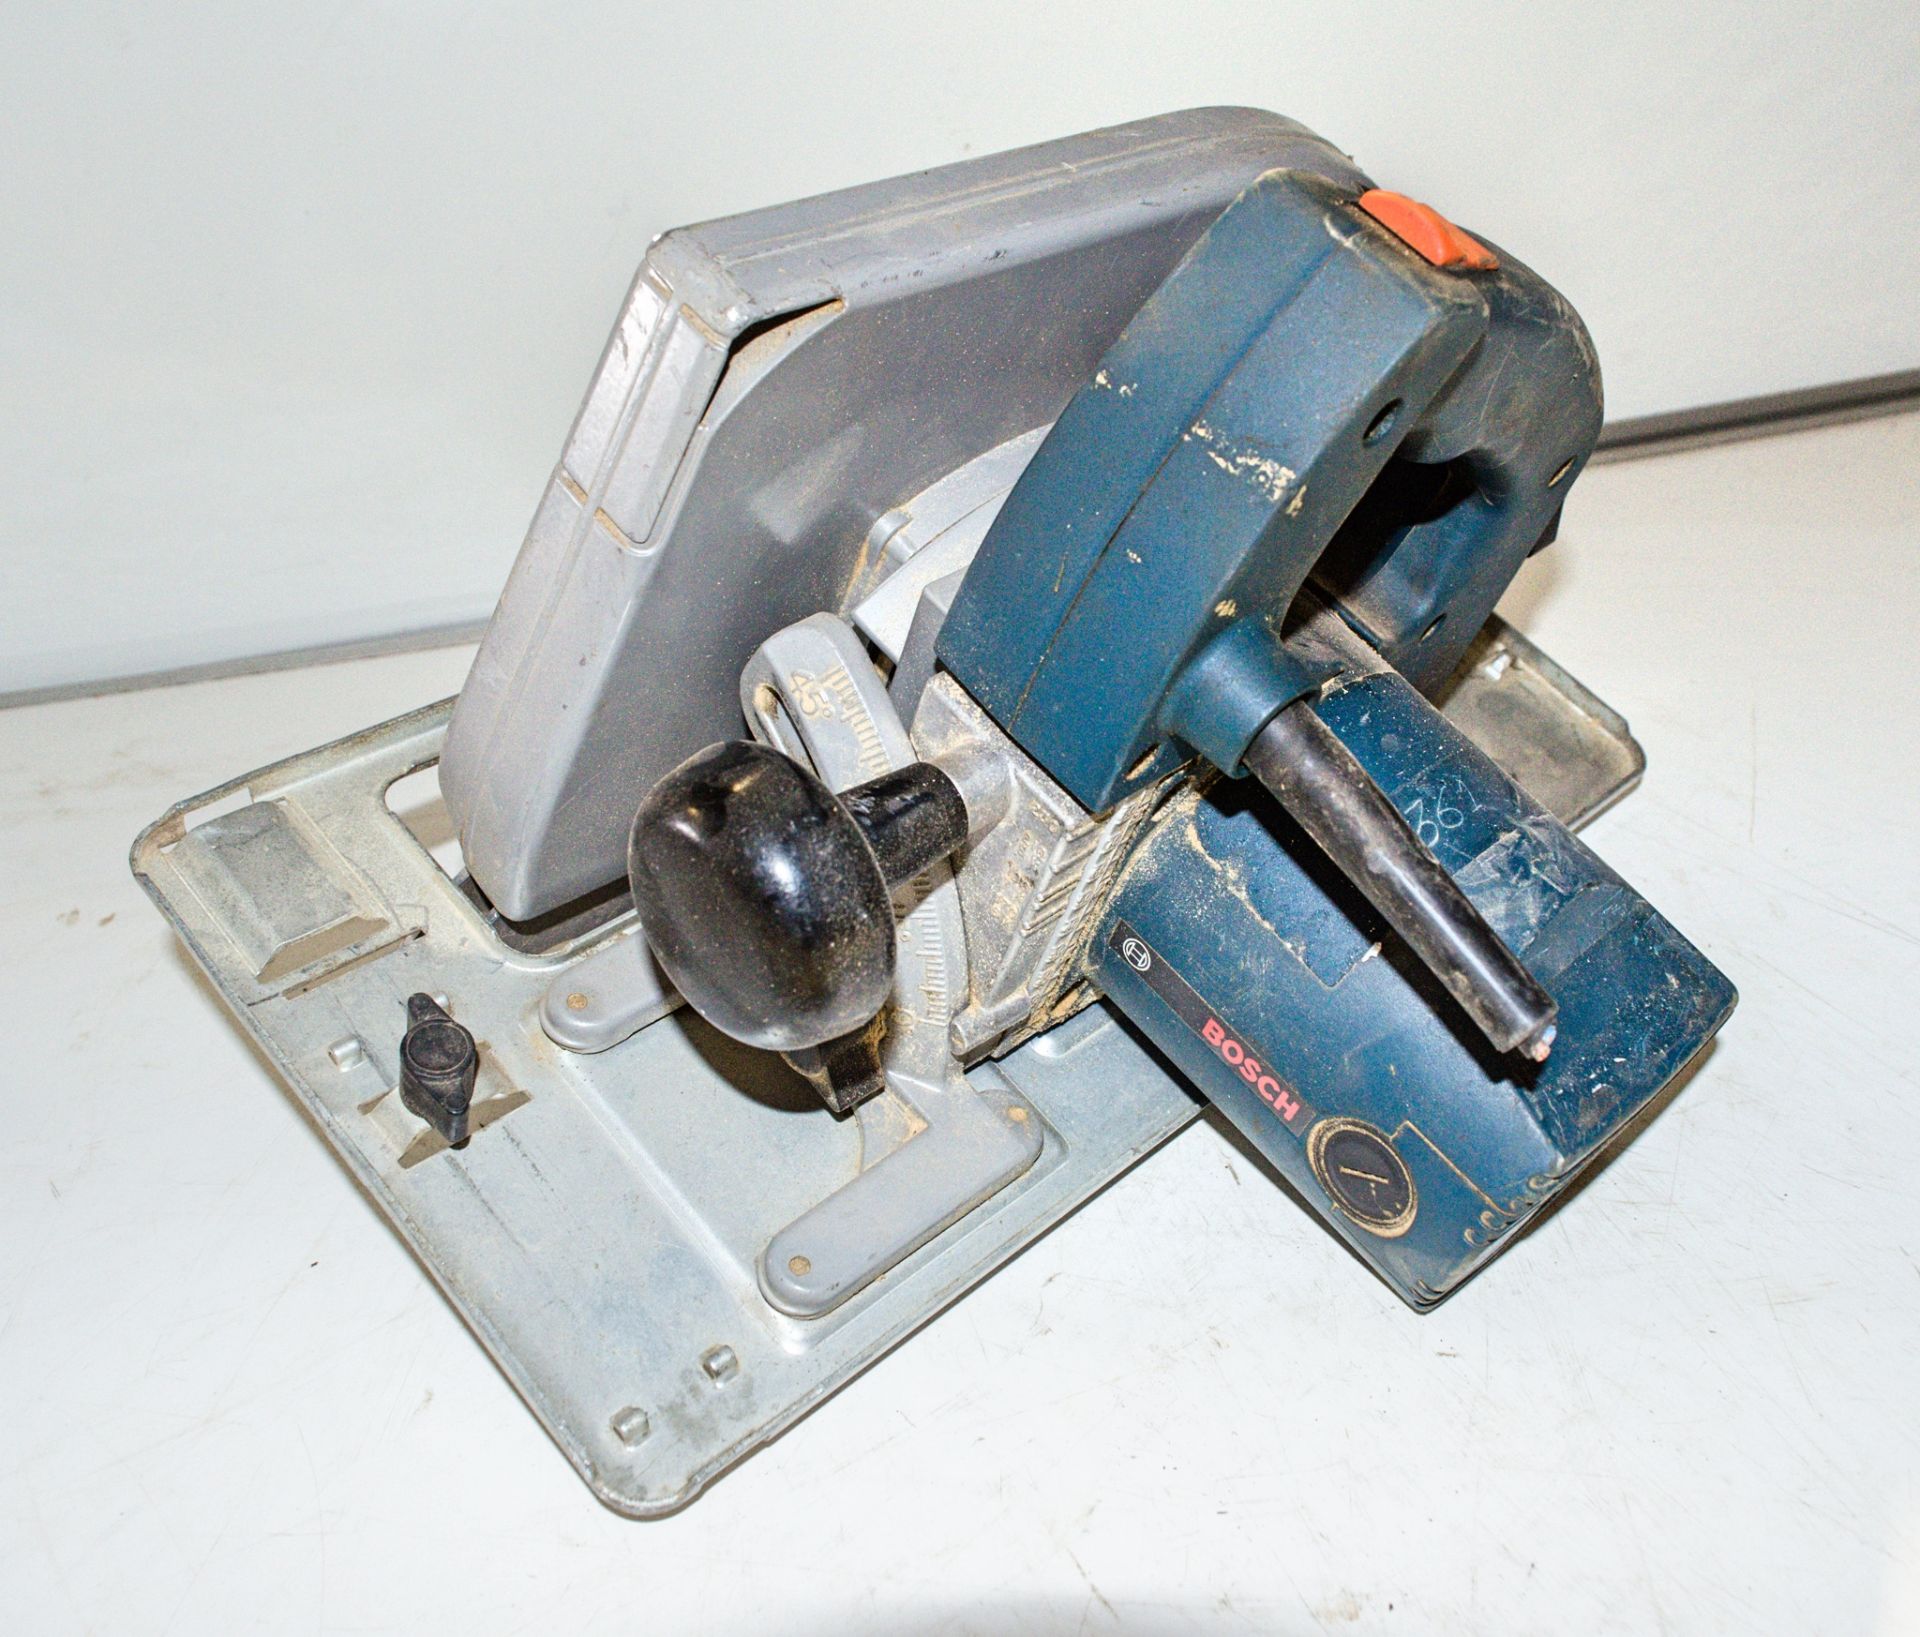 Bosch 110v circular saw ** Cord cut **